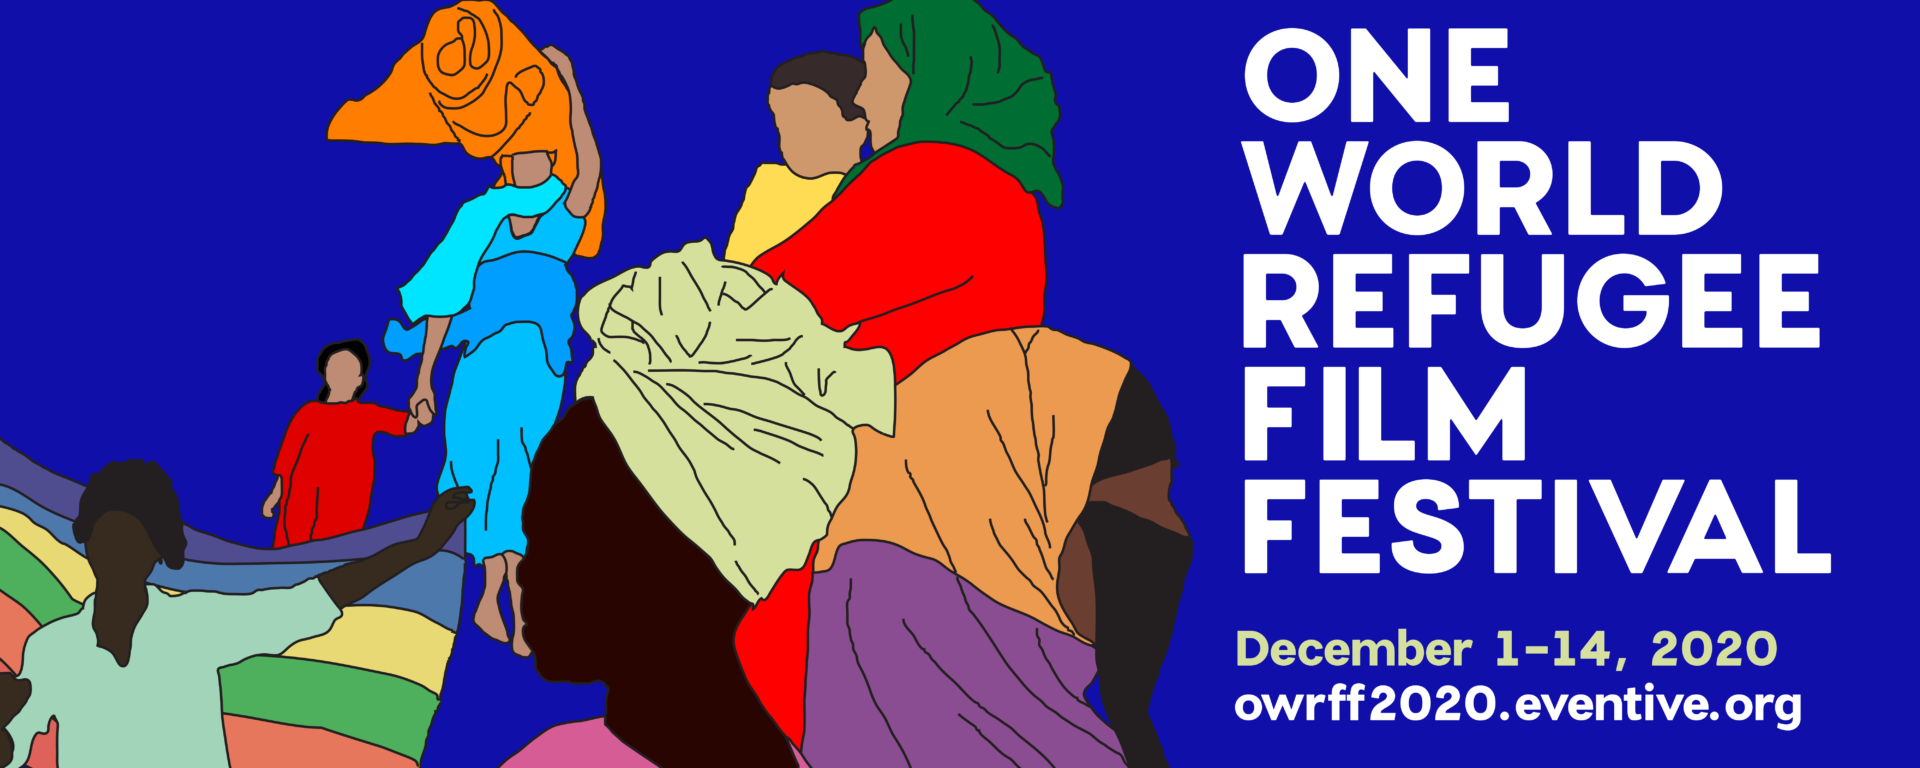 One World Refugee Film Festival